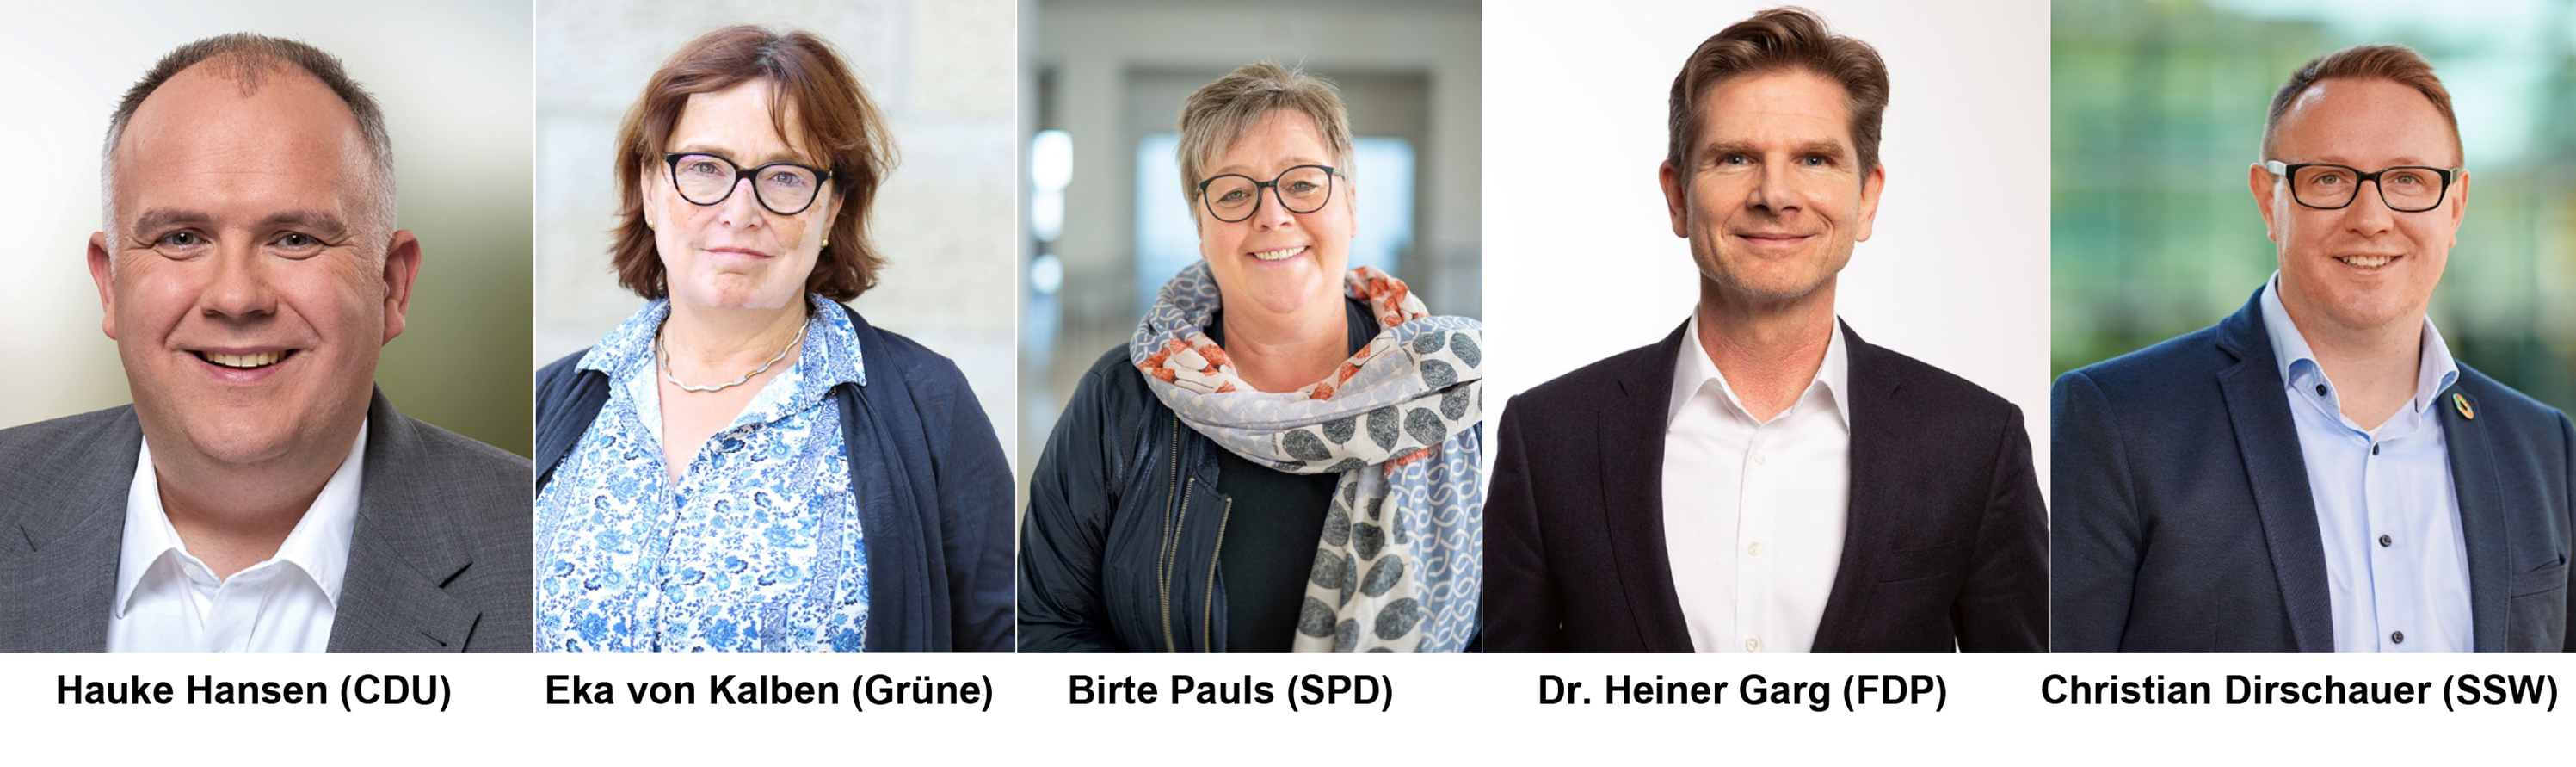 eine Collage der Portraitbilder der fünf gesundheitspolitischen Sprecher von CDU, B'90/Die Grünen, SPD, FDP und SSW